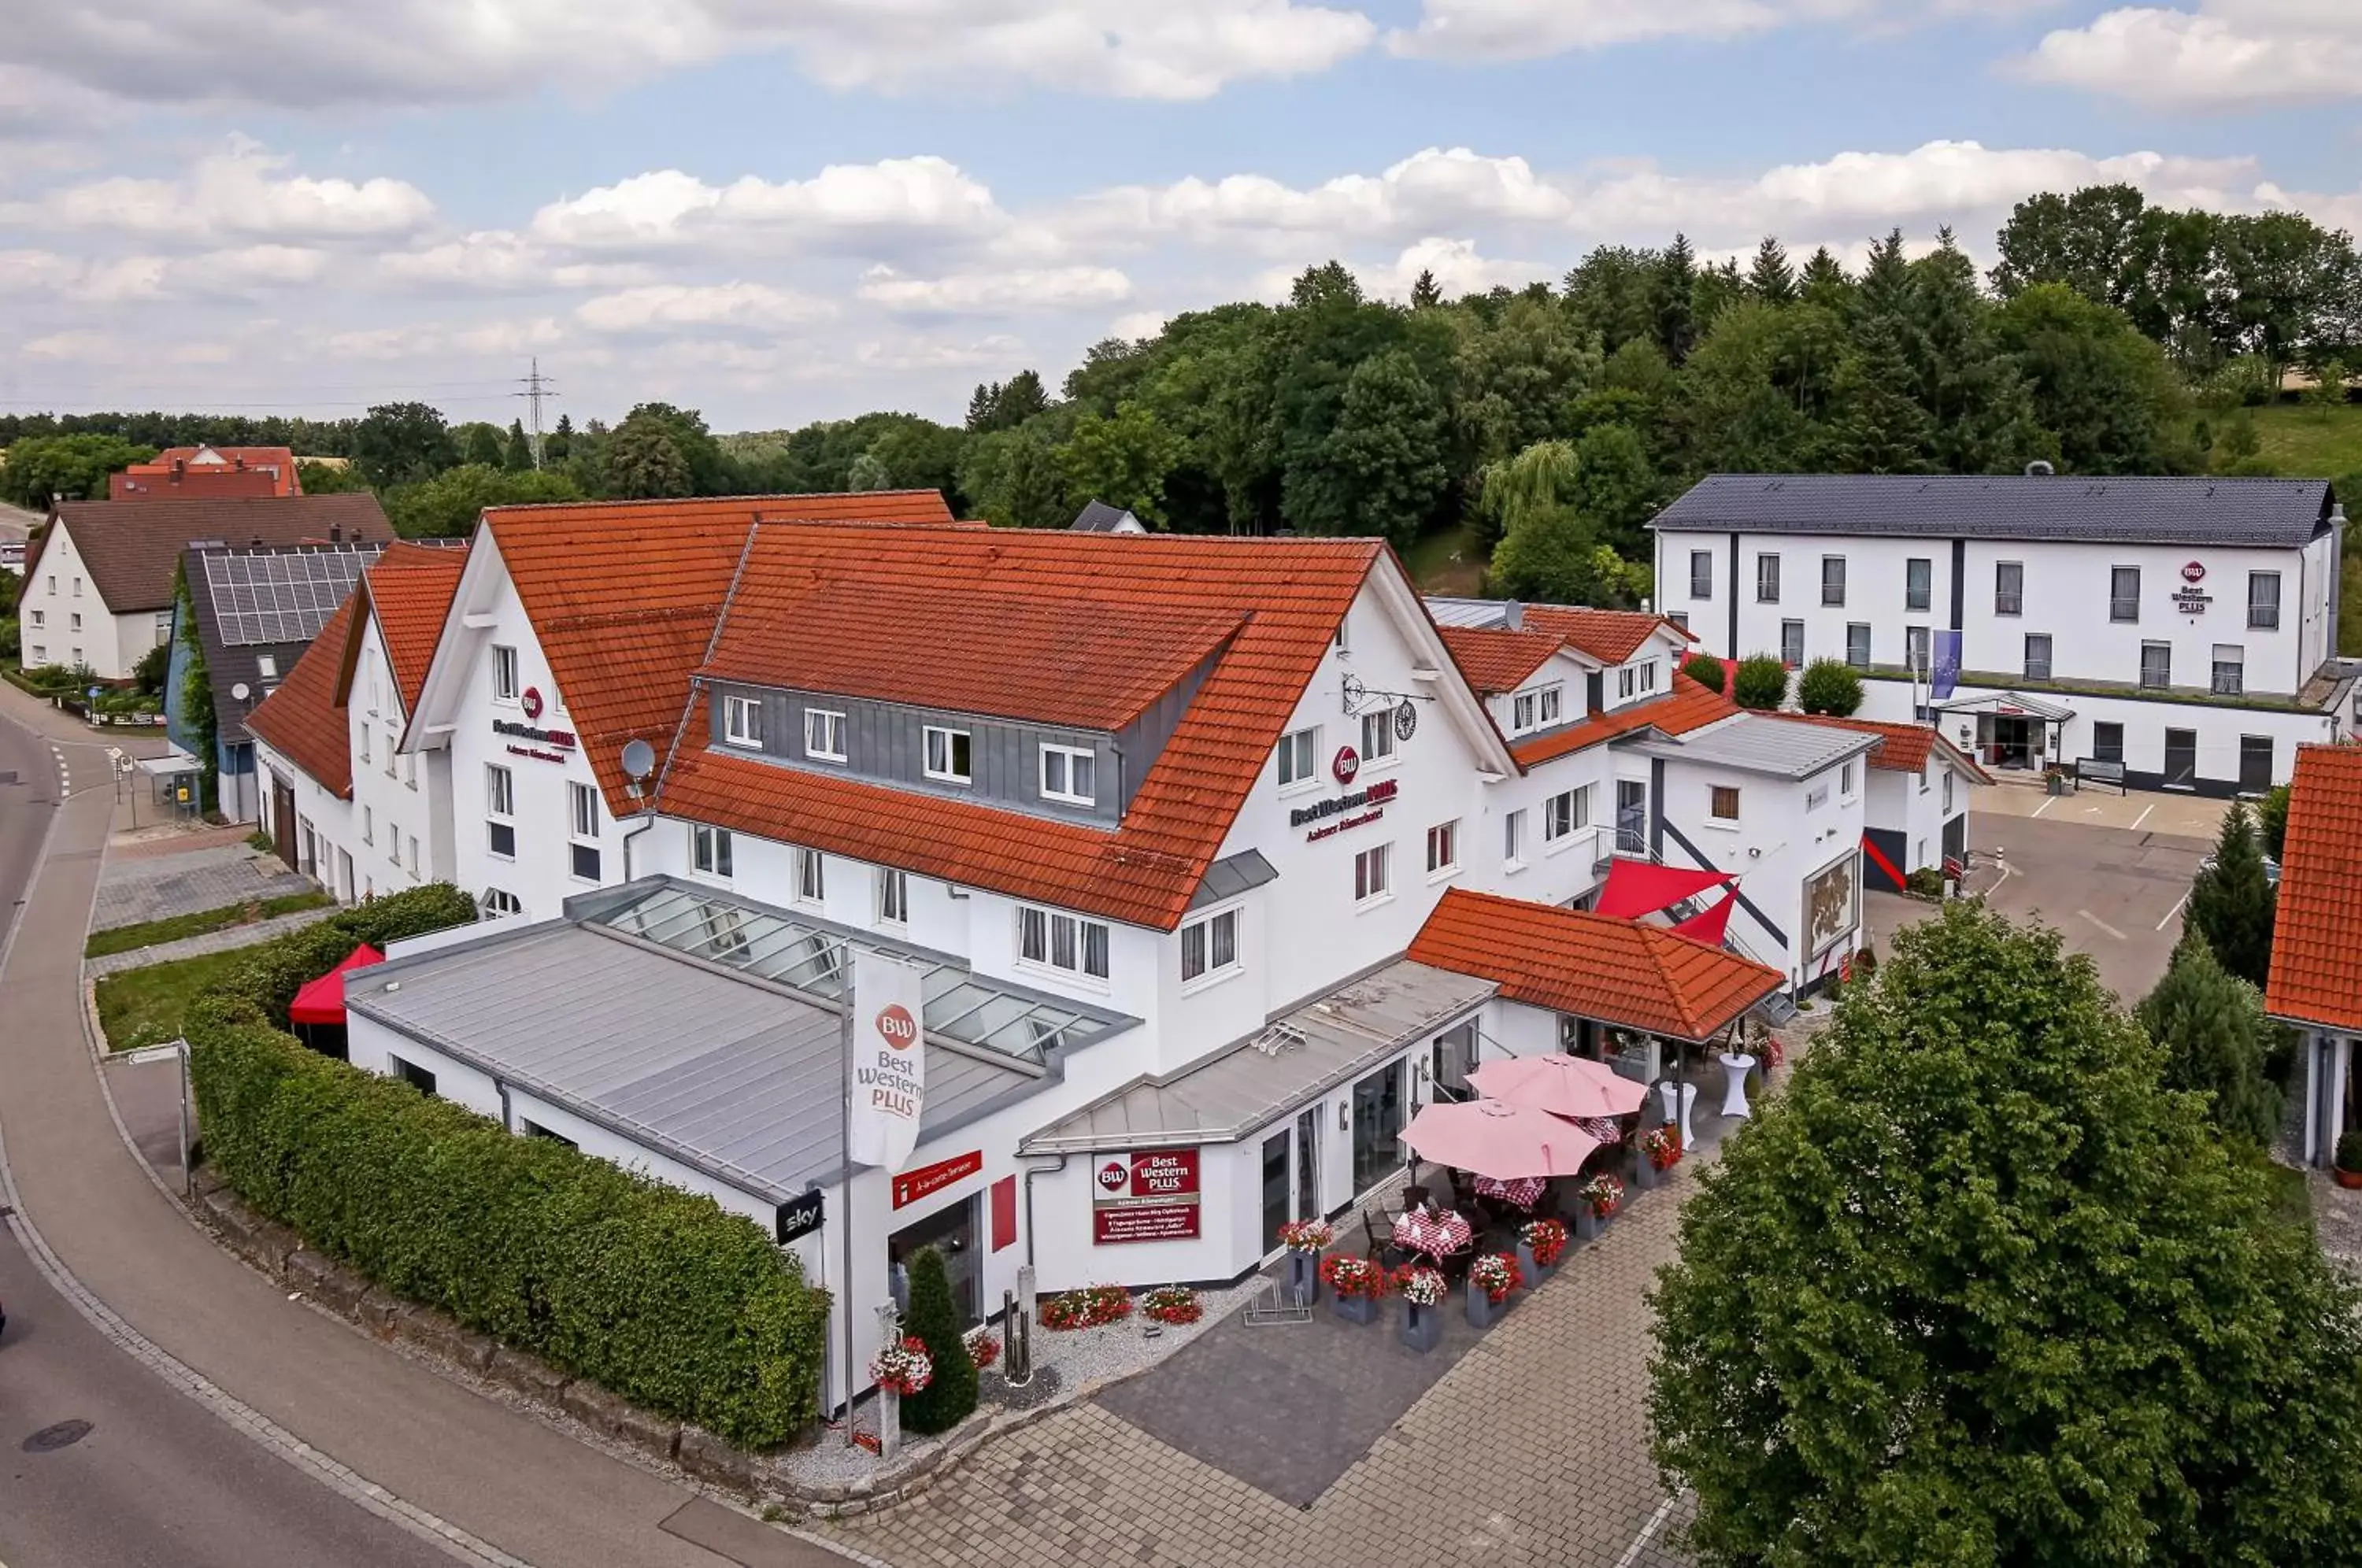 Property building, Bird's-eye View in BEST WESTERN PLUS Aalener Römerhotel a.W.L.